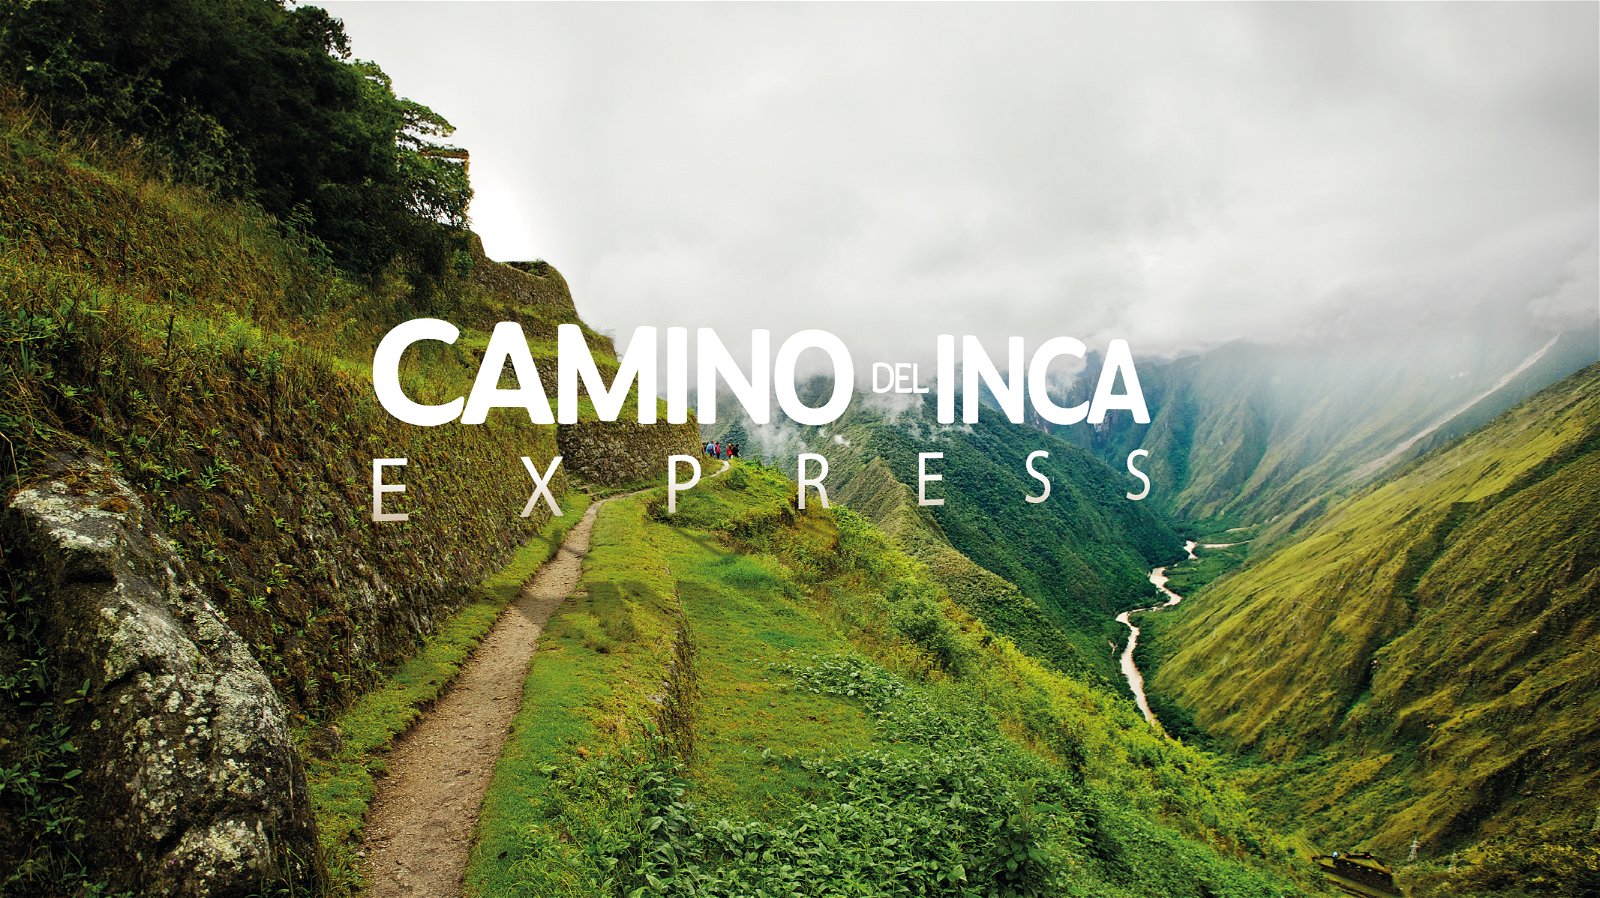 Camino del Inca Express.